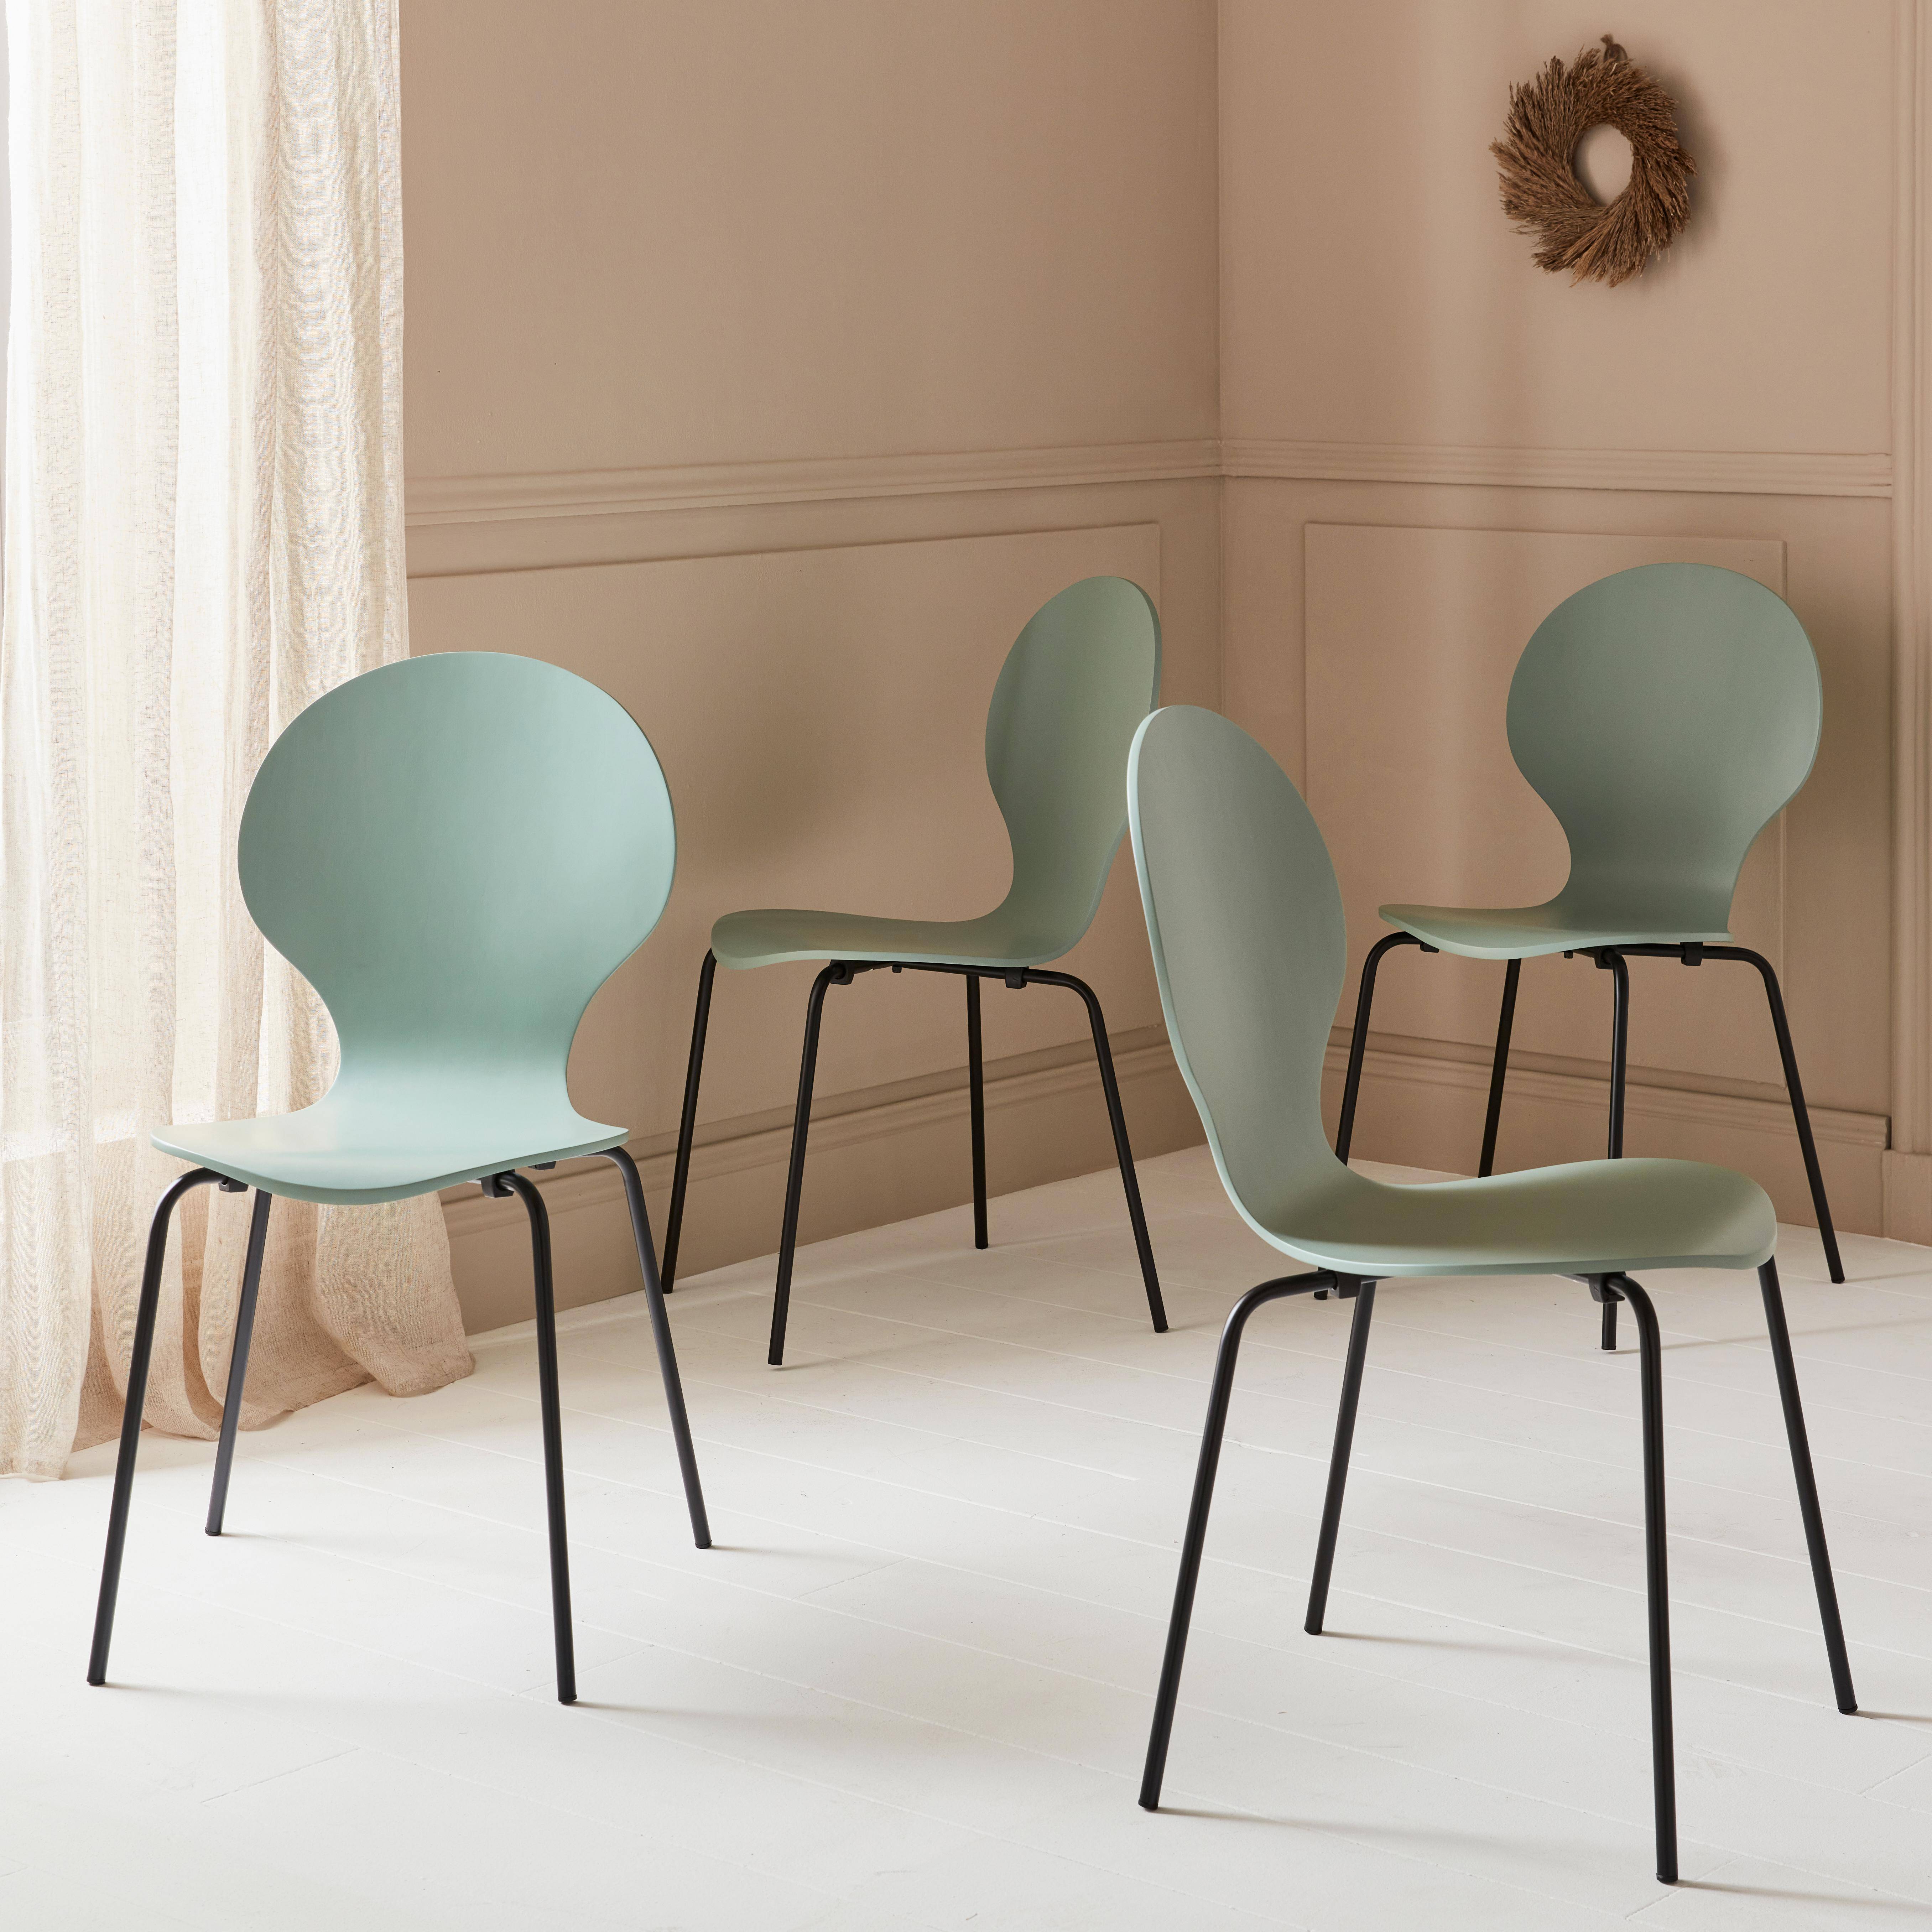 Set di 4 sedie verde grigio retro impilabili, legno di hevea e compensato, gambe in acciaio, Naomi, L 43 x P 48 x H 87cm,sweeek,Photo2